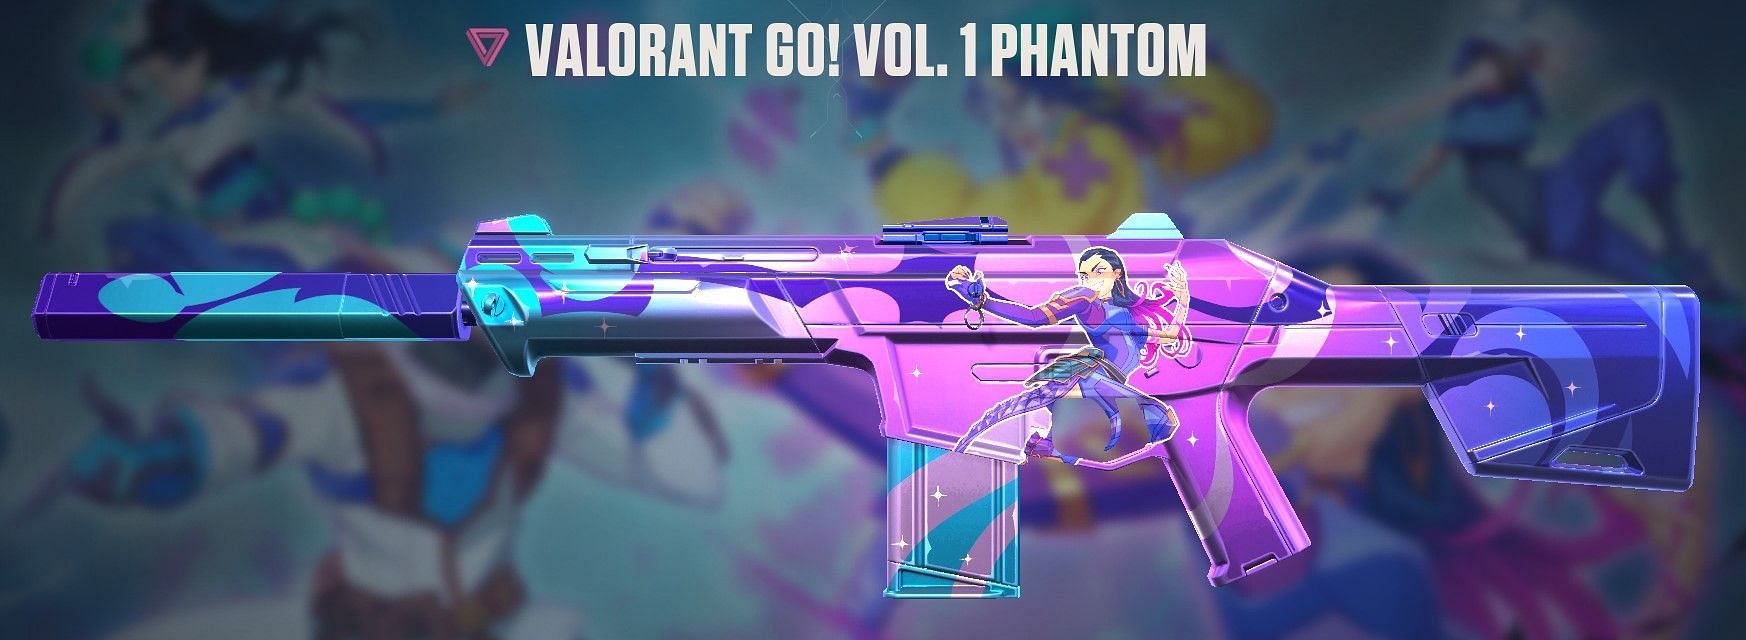 Valorant Go! Vol. 1 Phantom (Image via Riot Games)